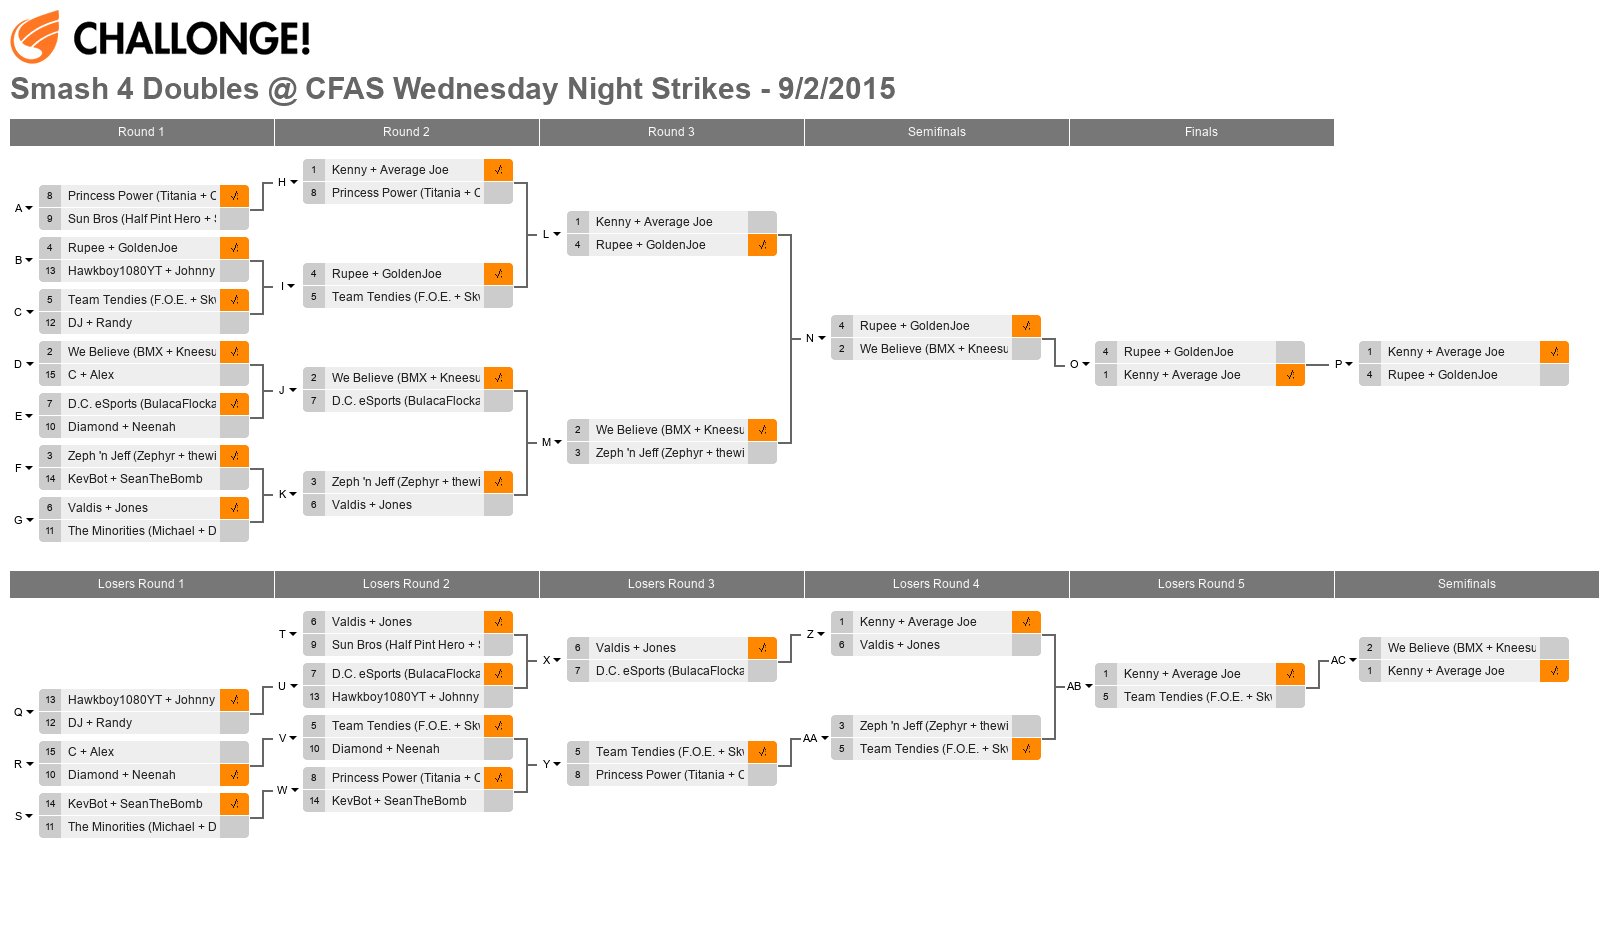 Smash 4 Doubles @ CFAS Wednesday Night Strikes - 9/2/2015